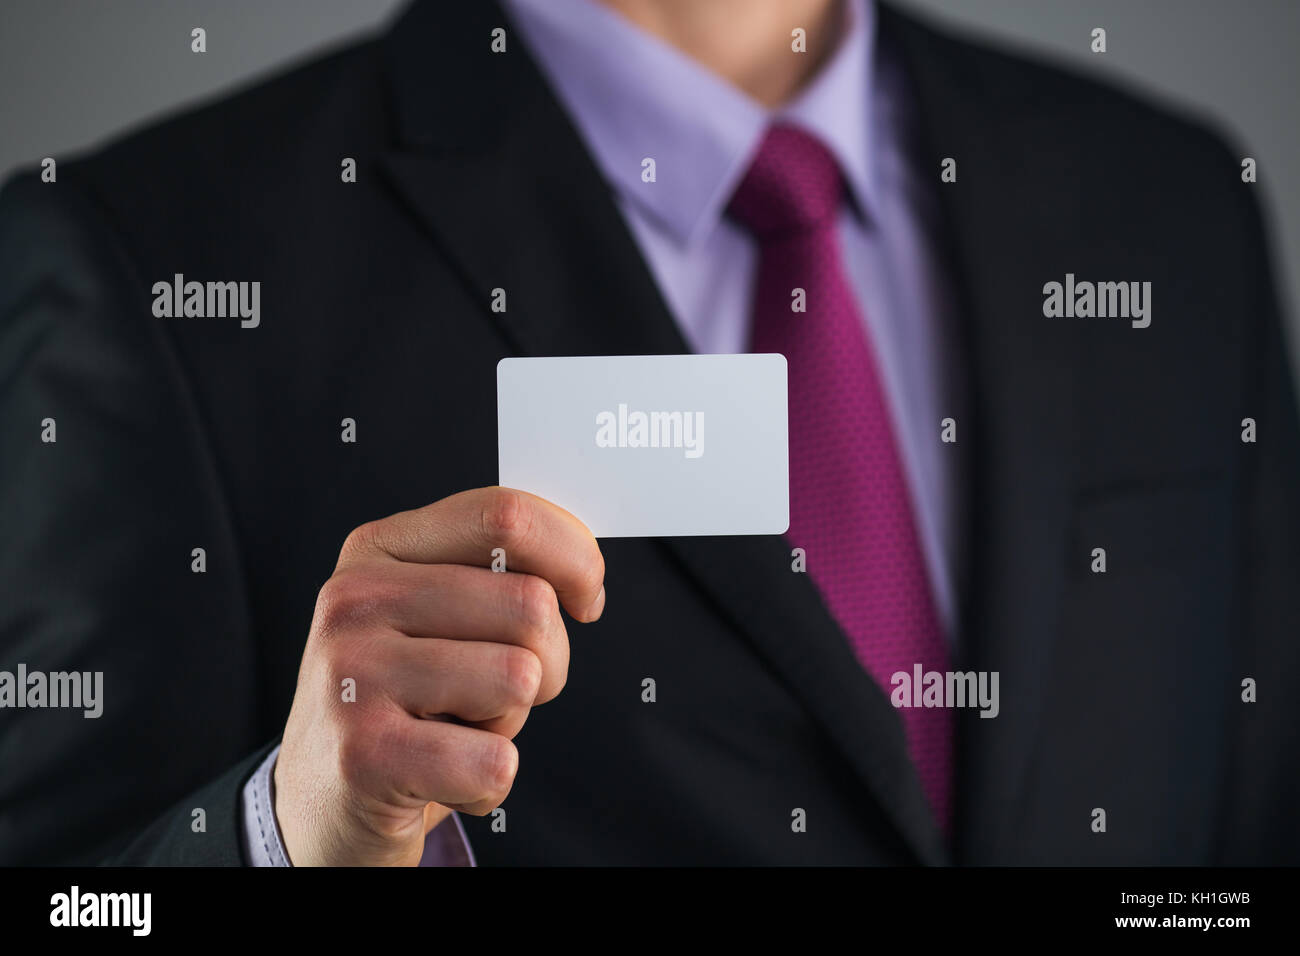 El empresario en un elegante traje y con una corbata, muestra tarjeta con copia espacio, Foto de estudio Foto de stock